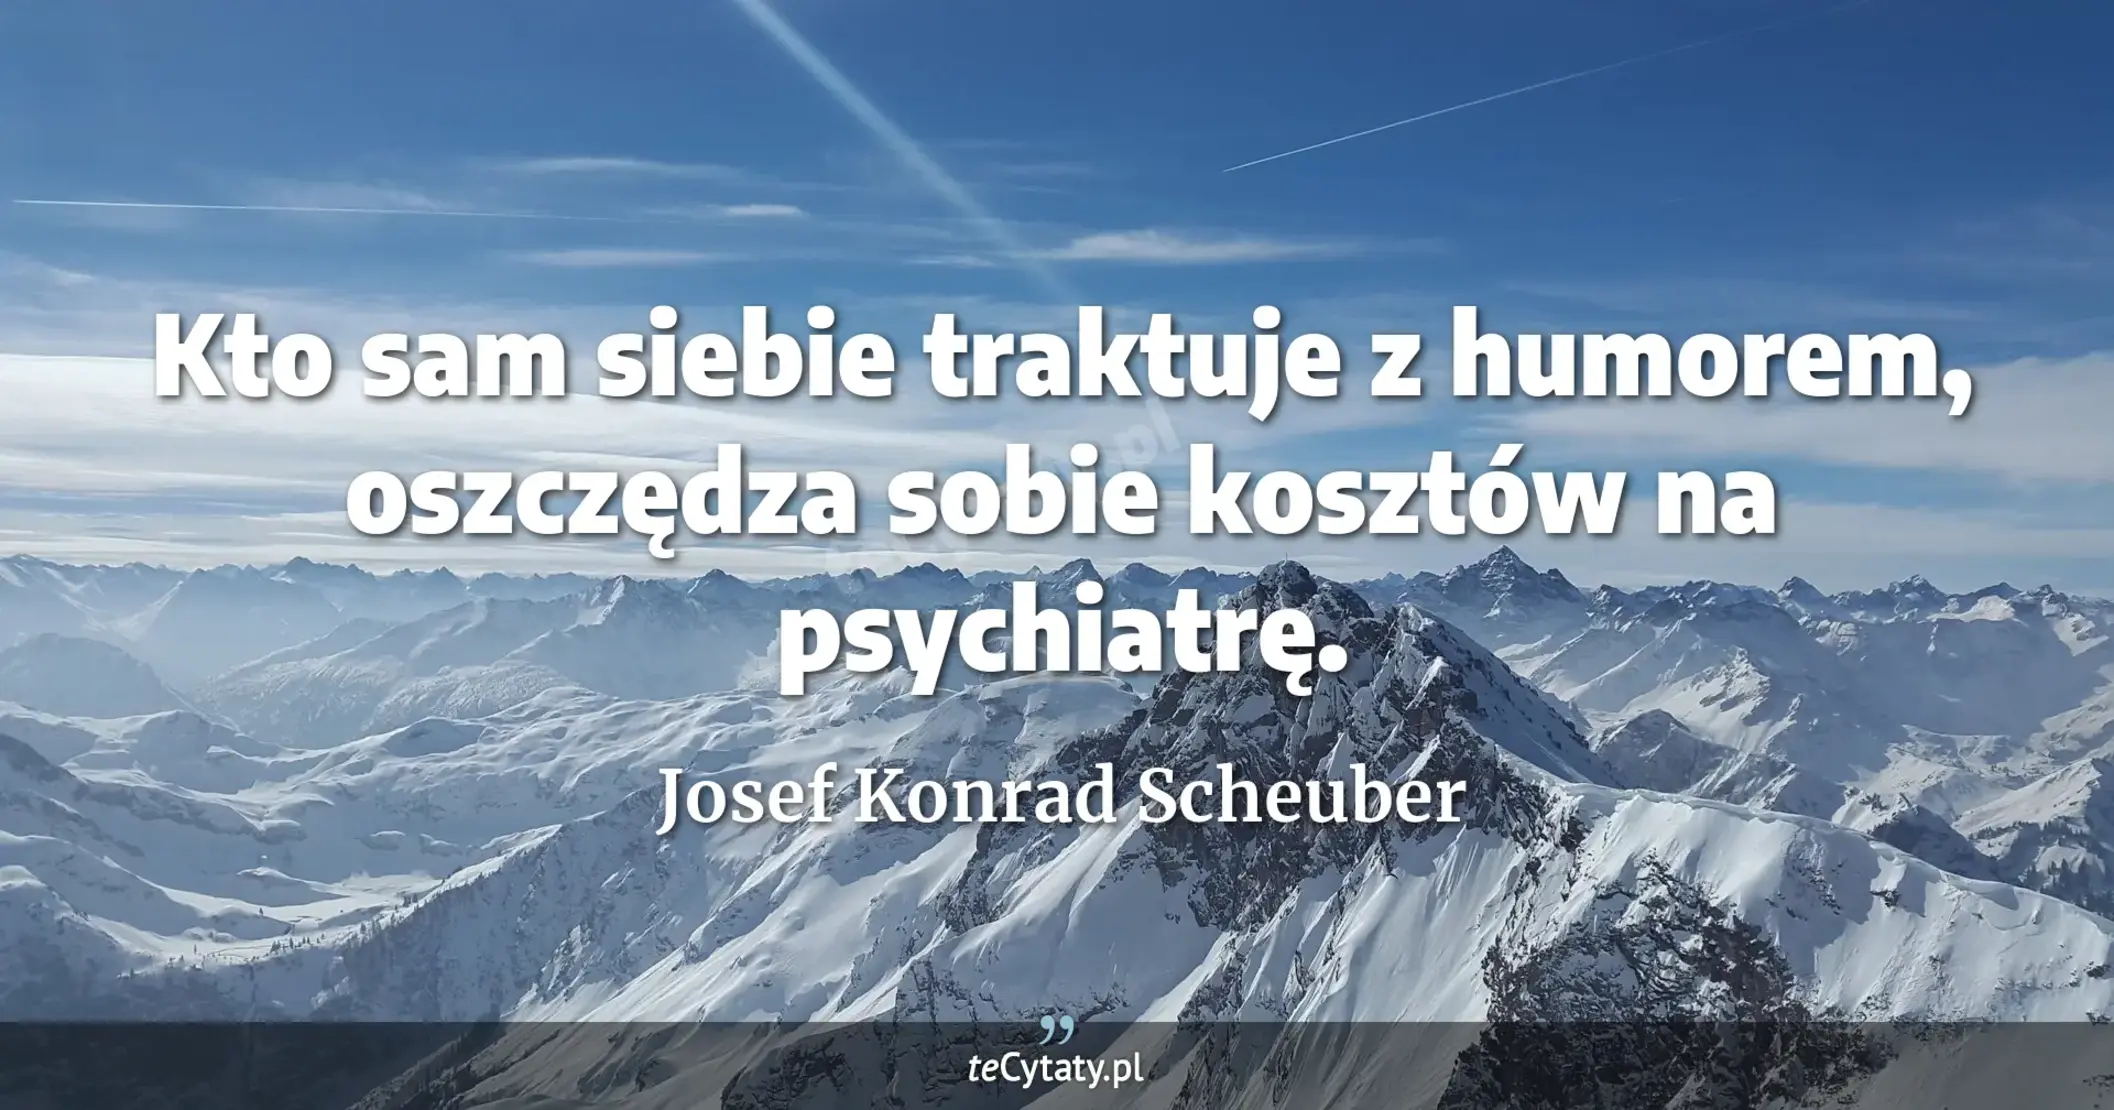 Kto sam siebie traktuje z humorem, oszczędza sobie kosztów na psychiatrę. - Josef Konrad Scheuber